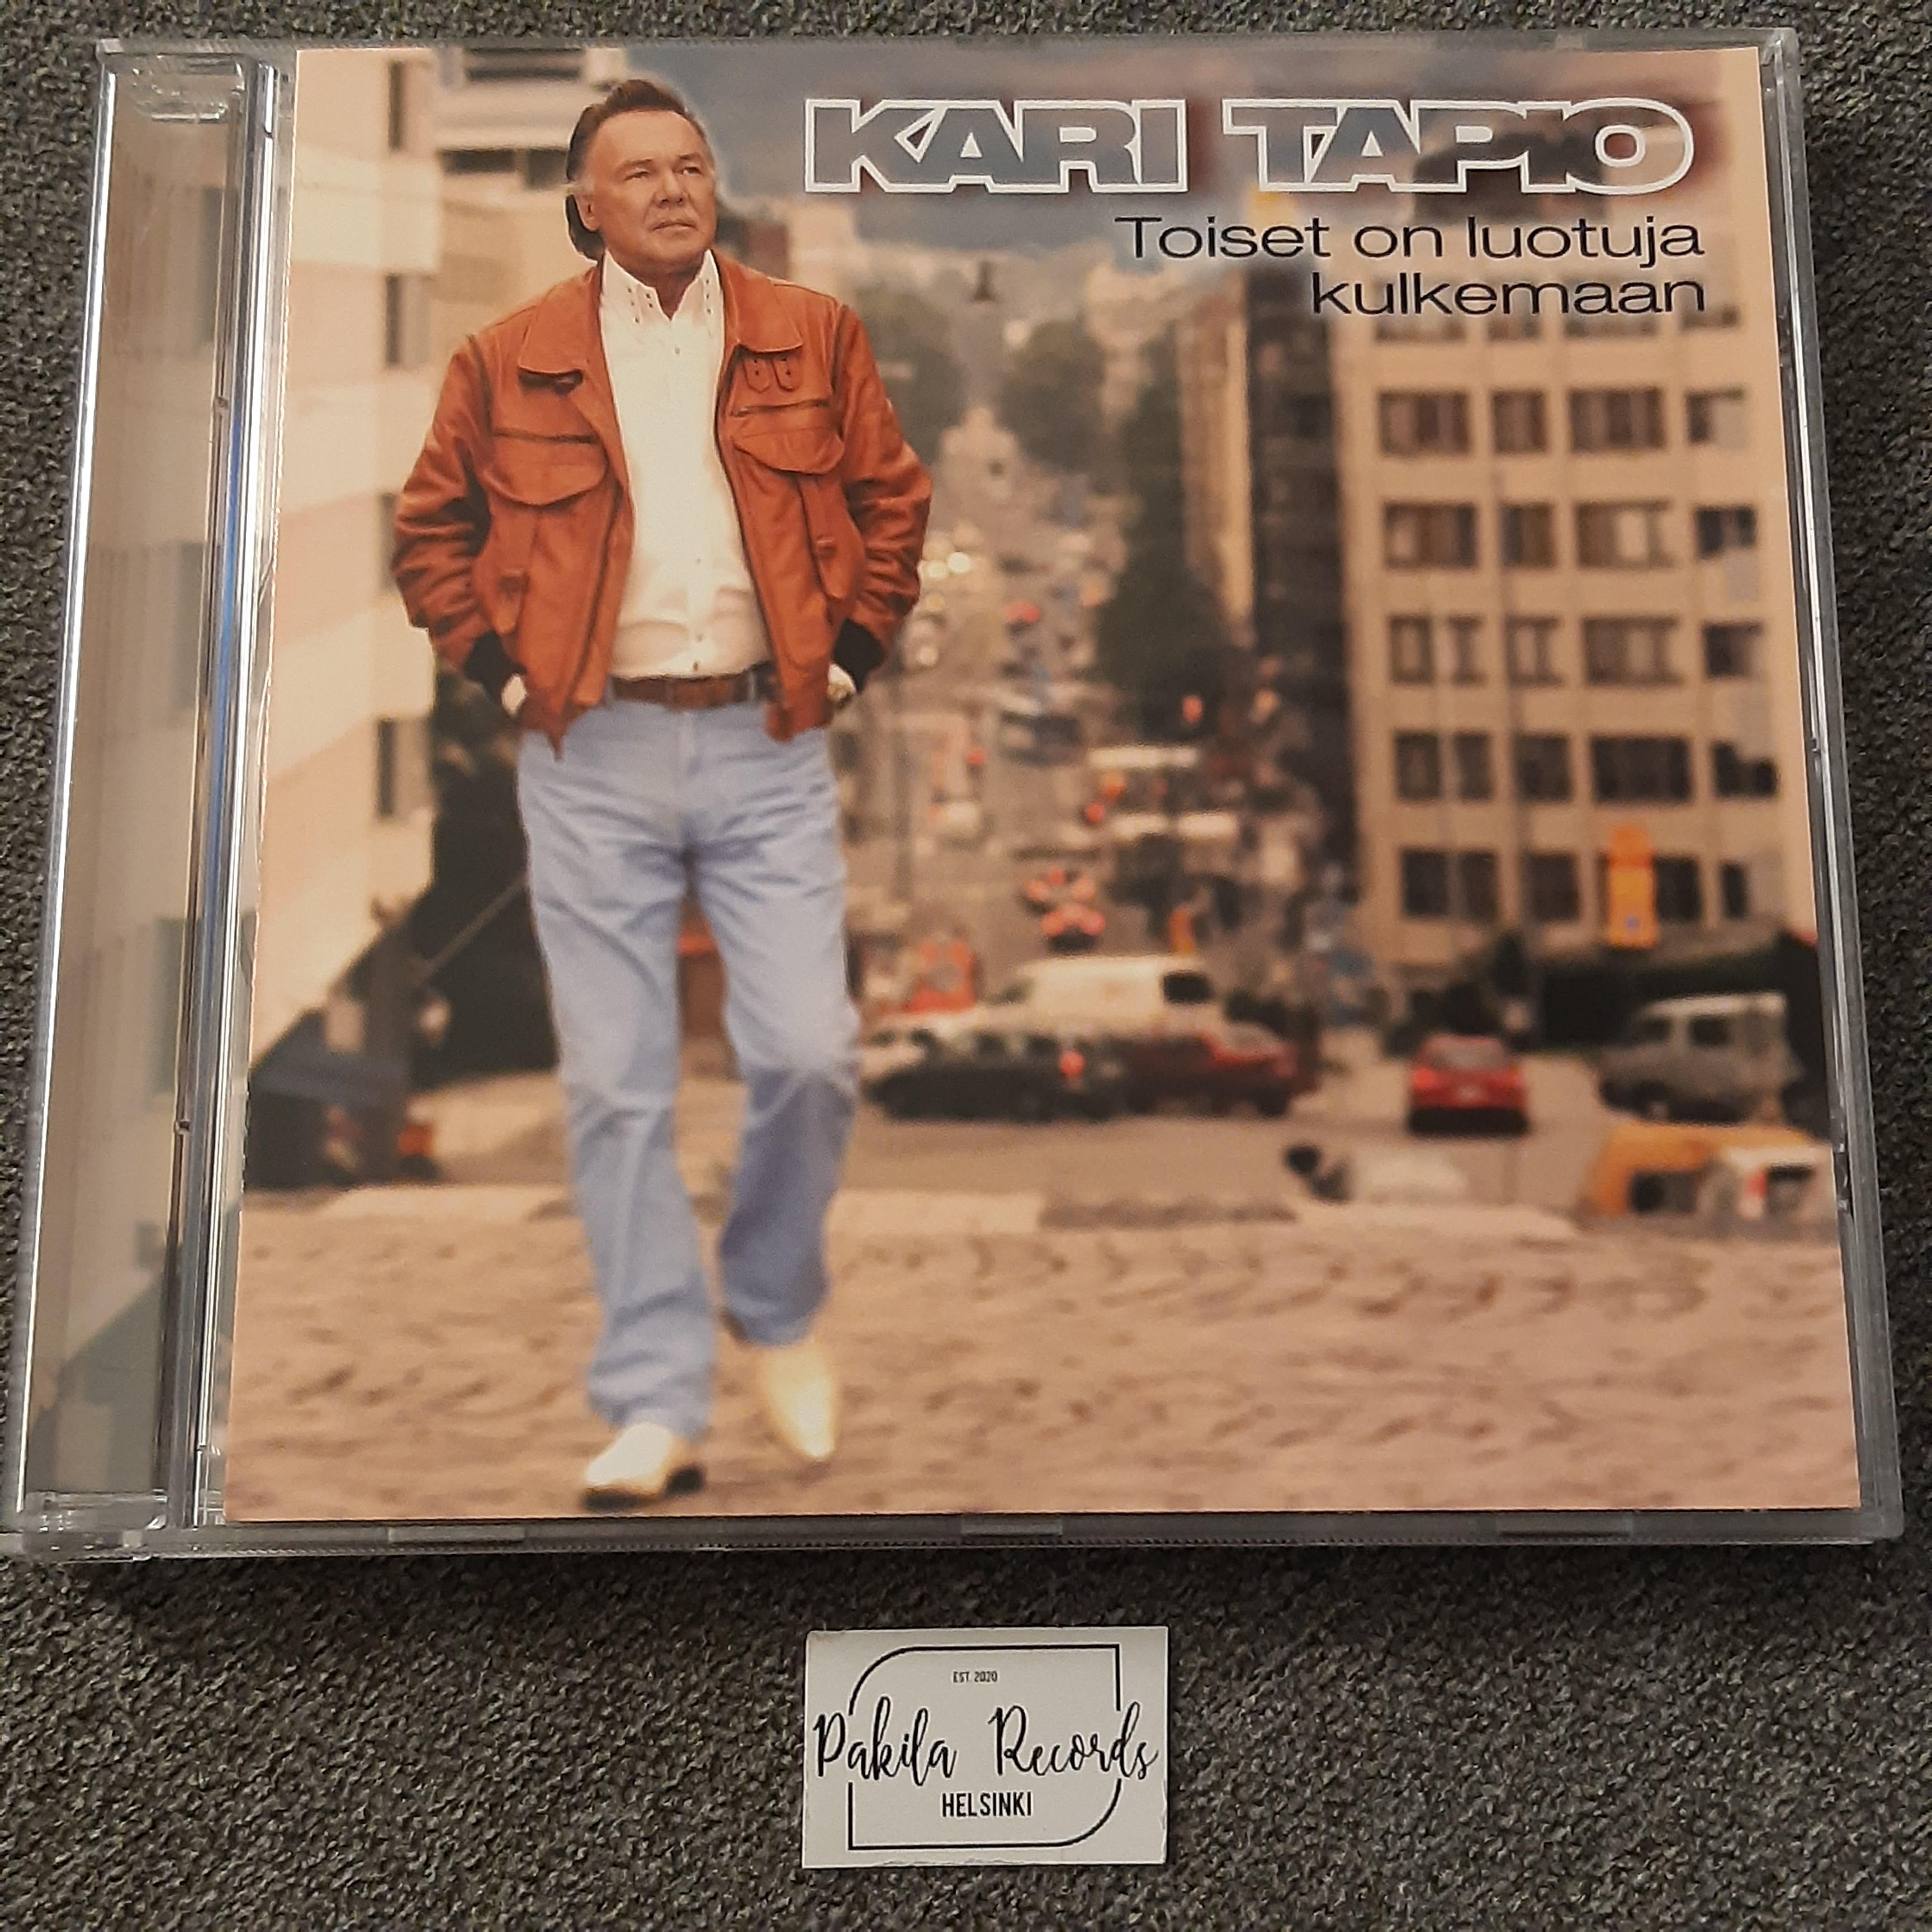 Kari Tapio - Toiset on luotuja kulkemaan - CD (käytetty)